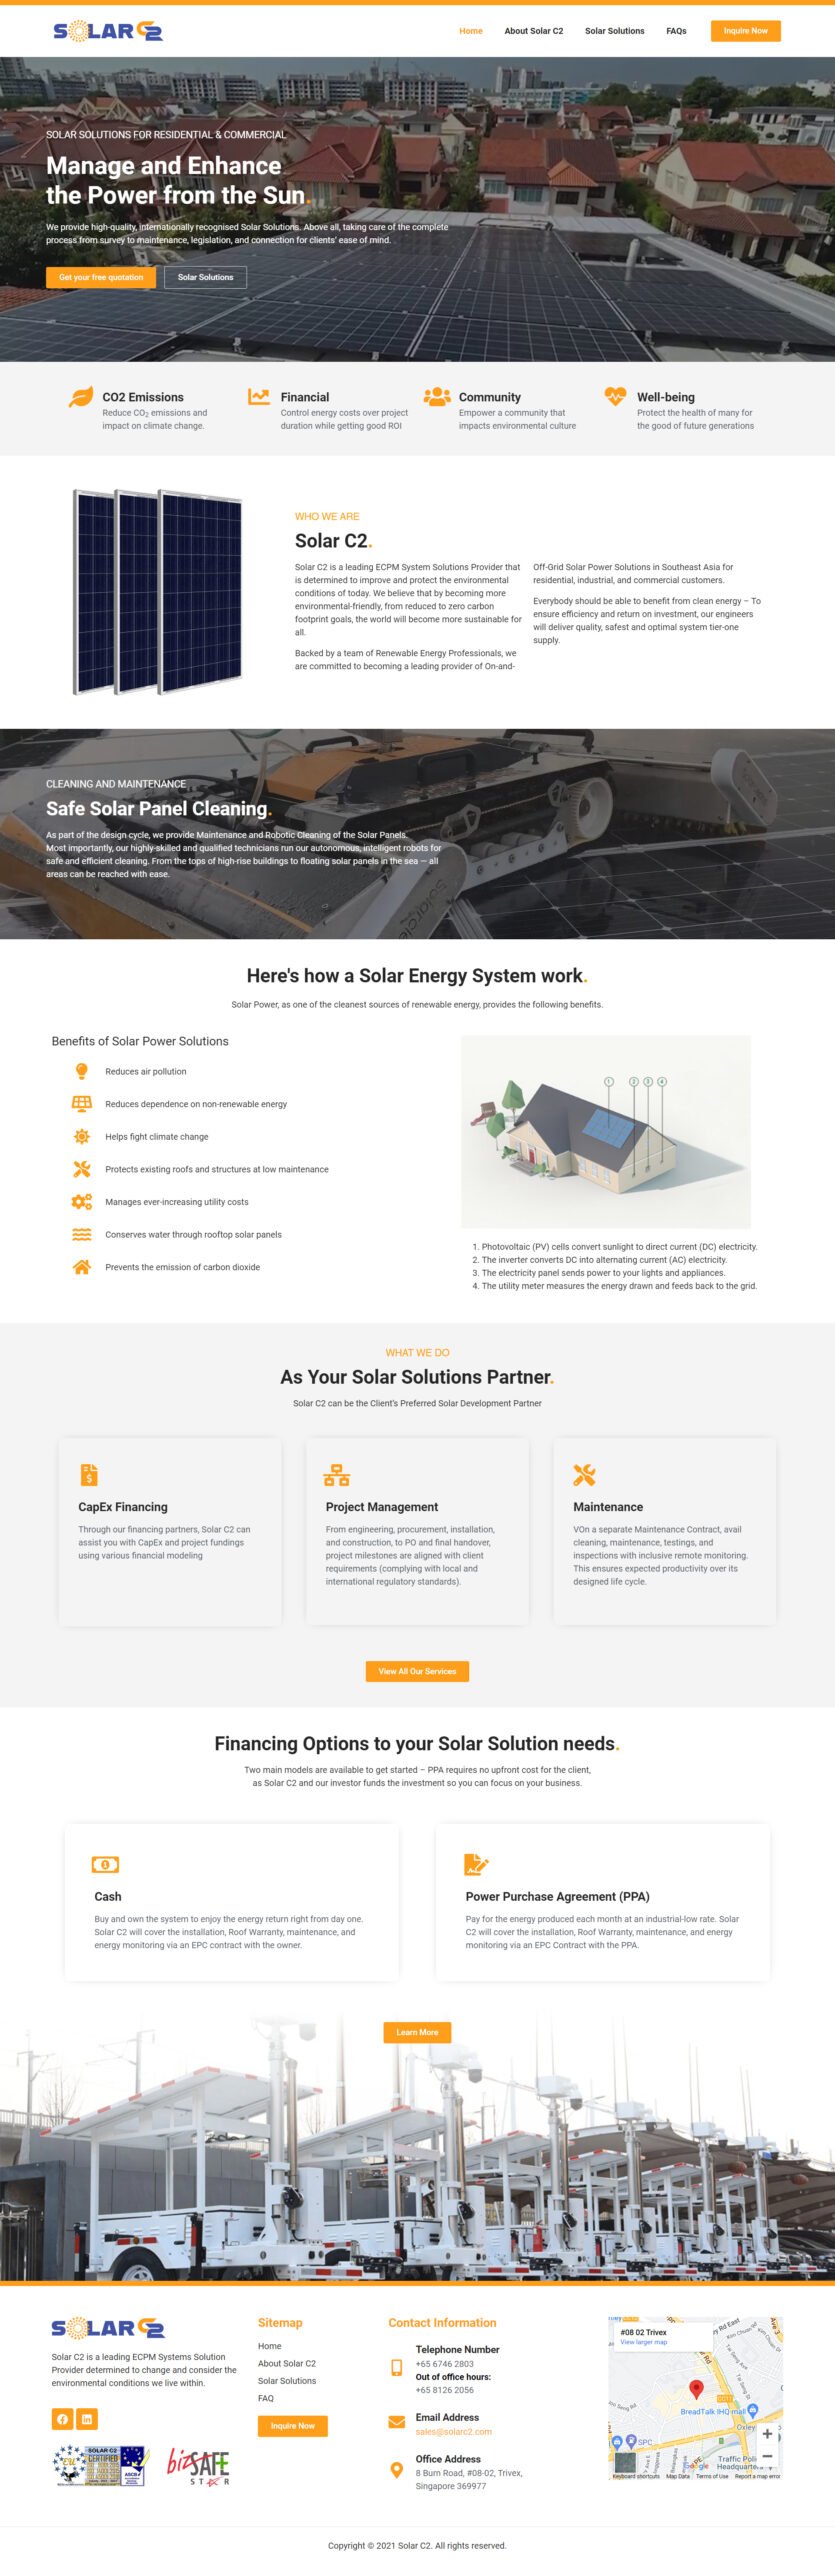 Website Design Portfolio SolarC2